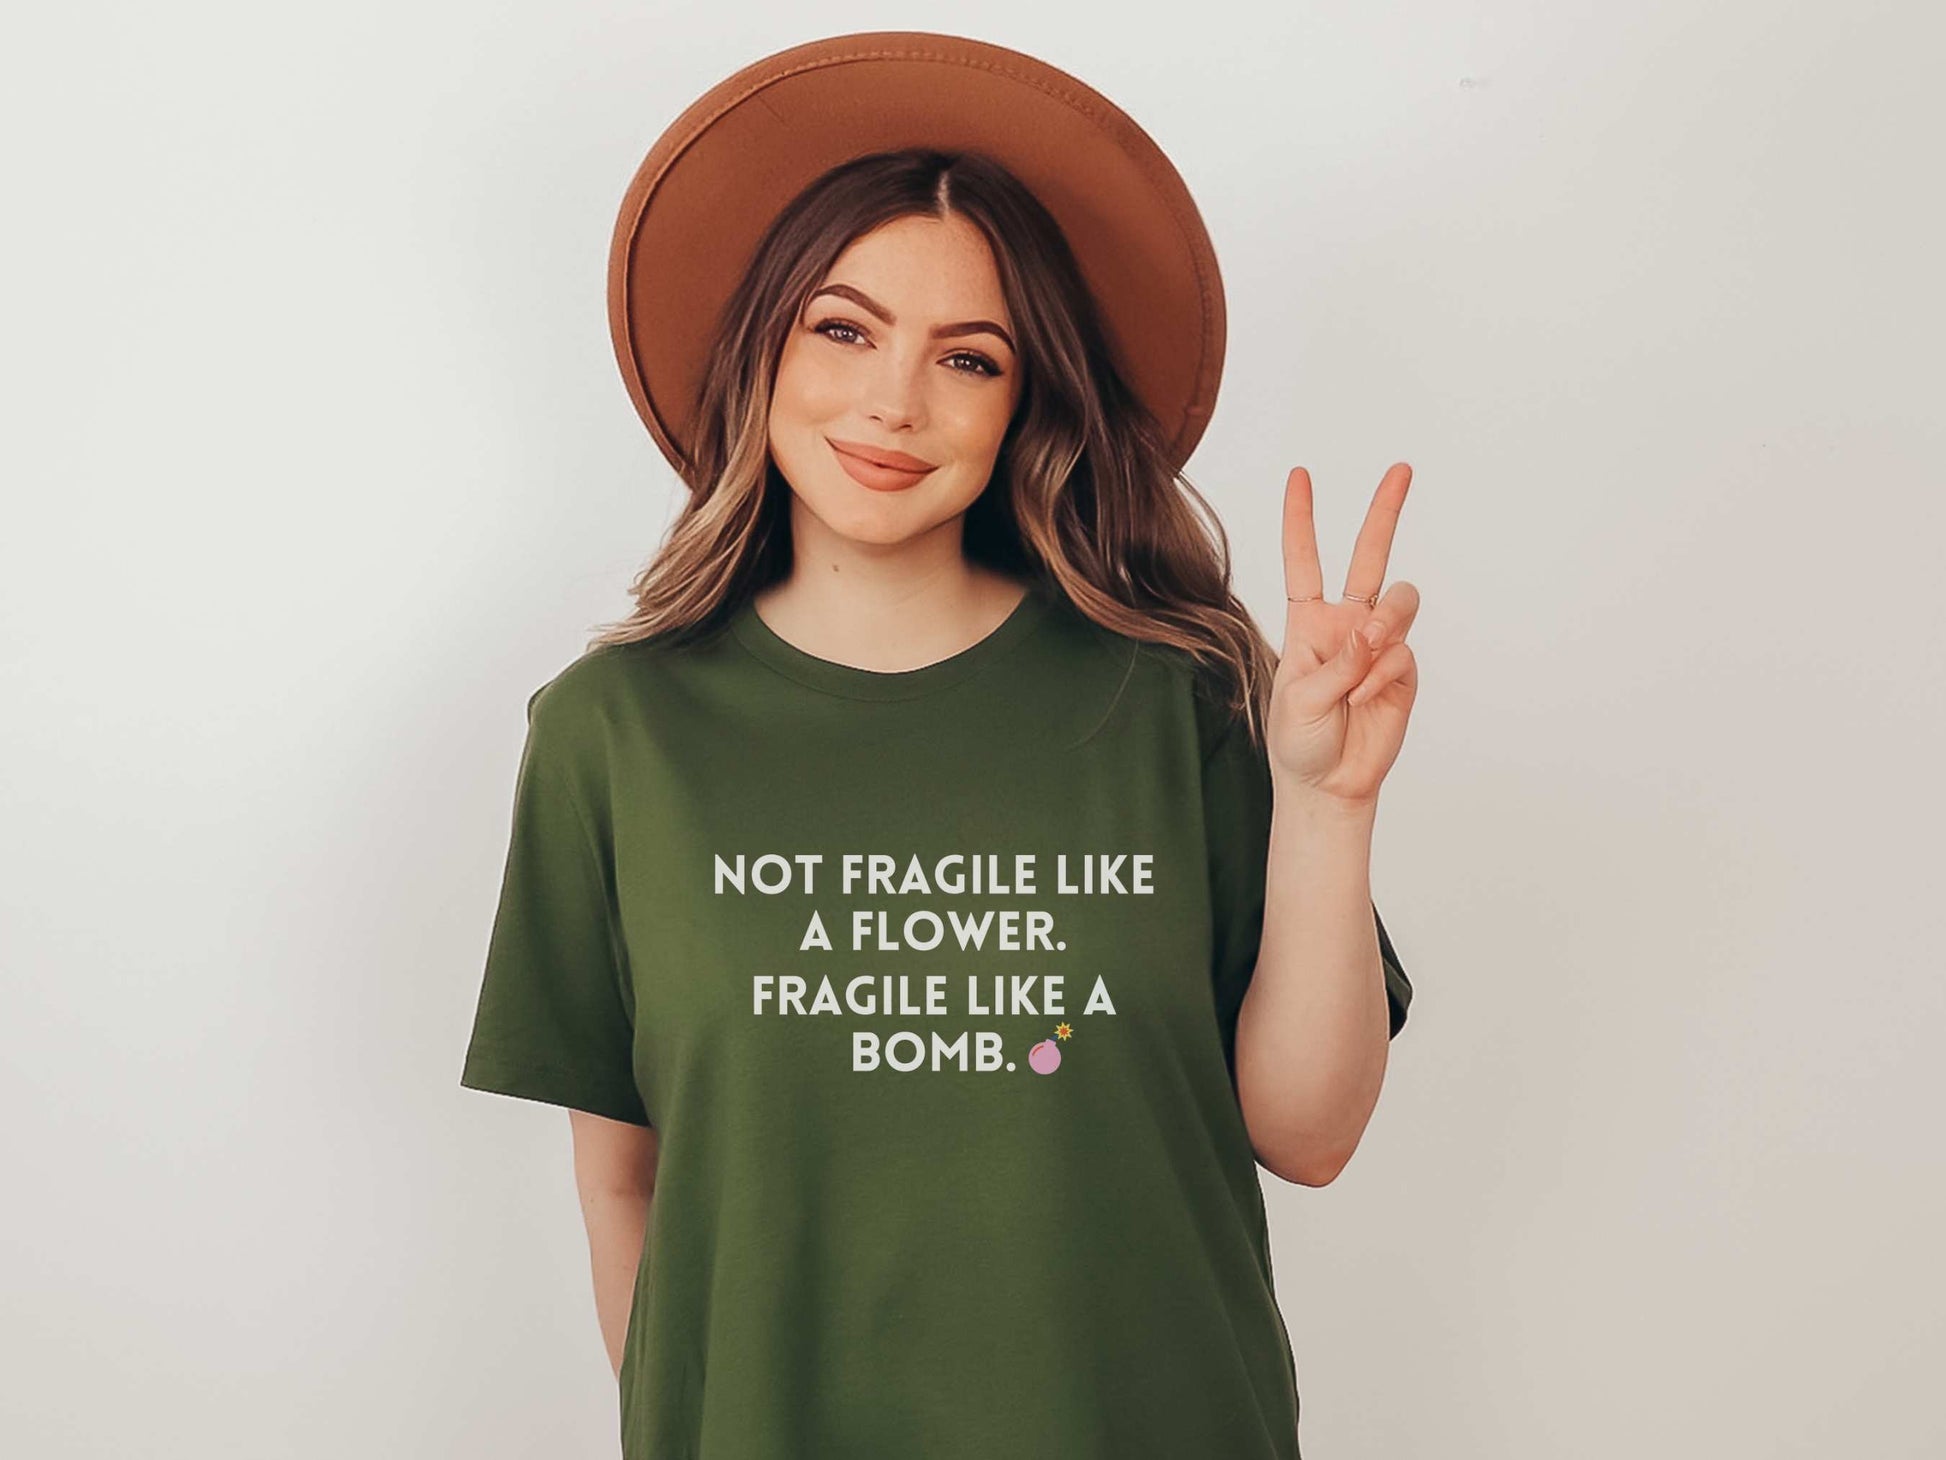 Fragile Like a Bomb Frida Kahlo T-Shirt in Olive